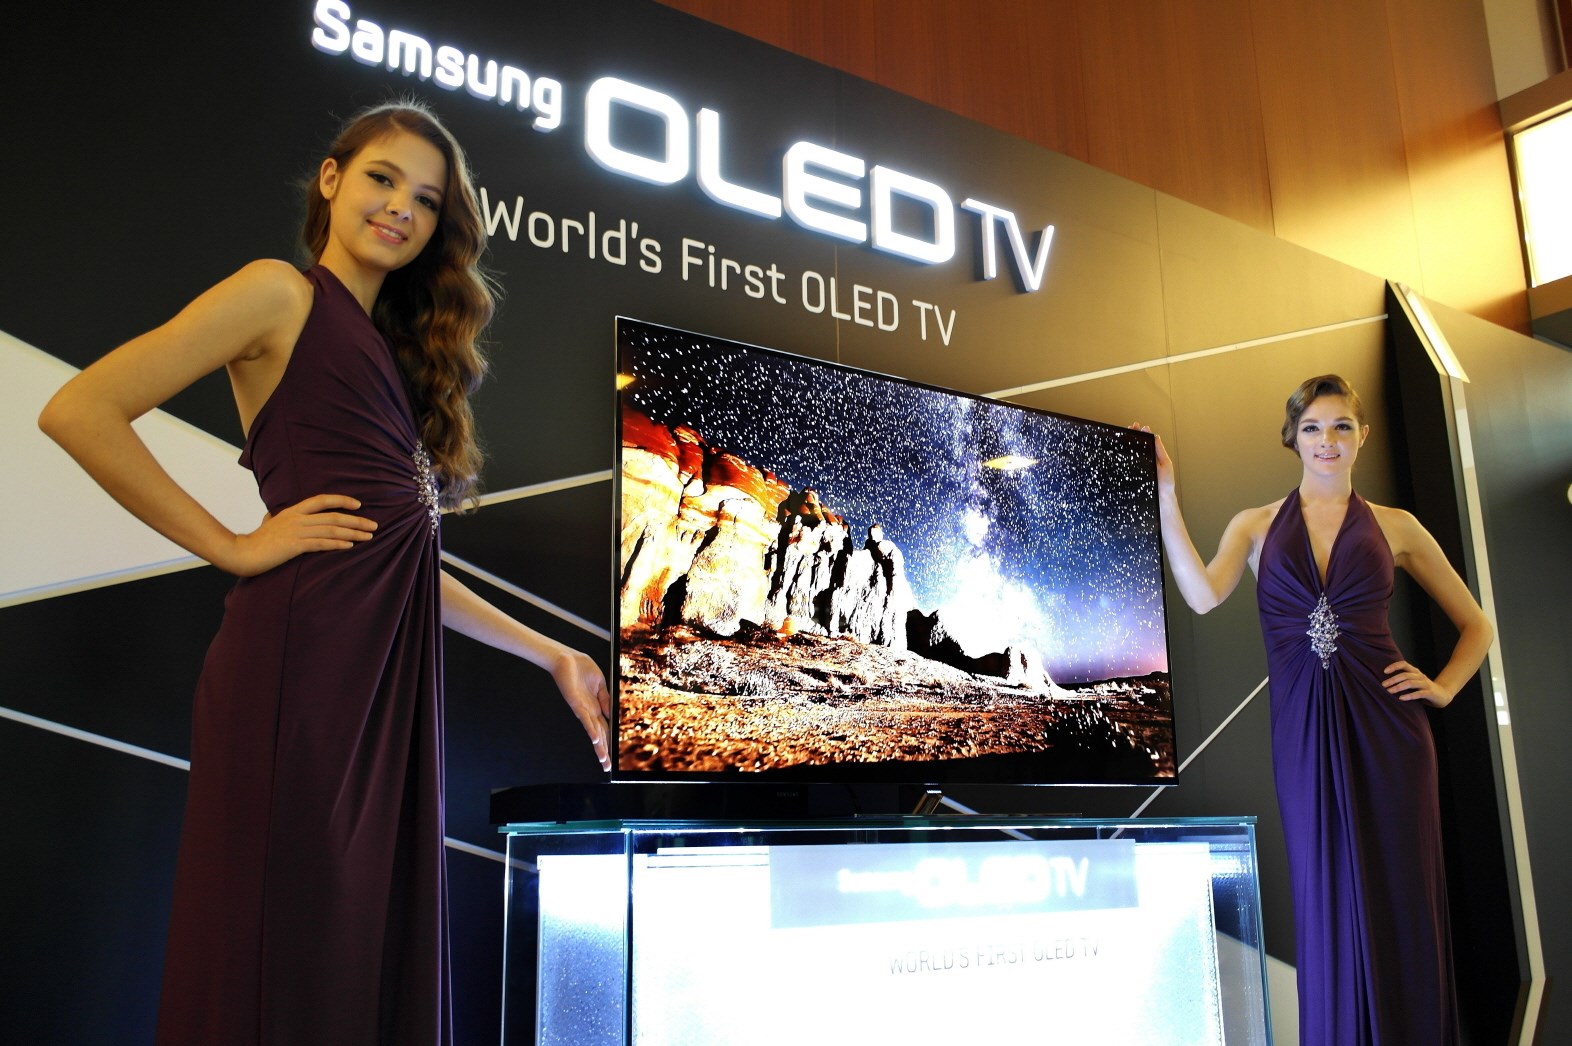 Samsung ezeli rakibi LG'den OLED ekran satın alacak: İşte tarihi anlaşmanın detayları